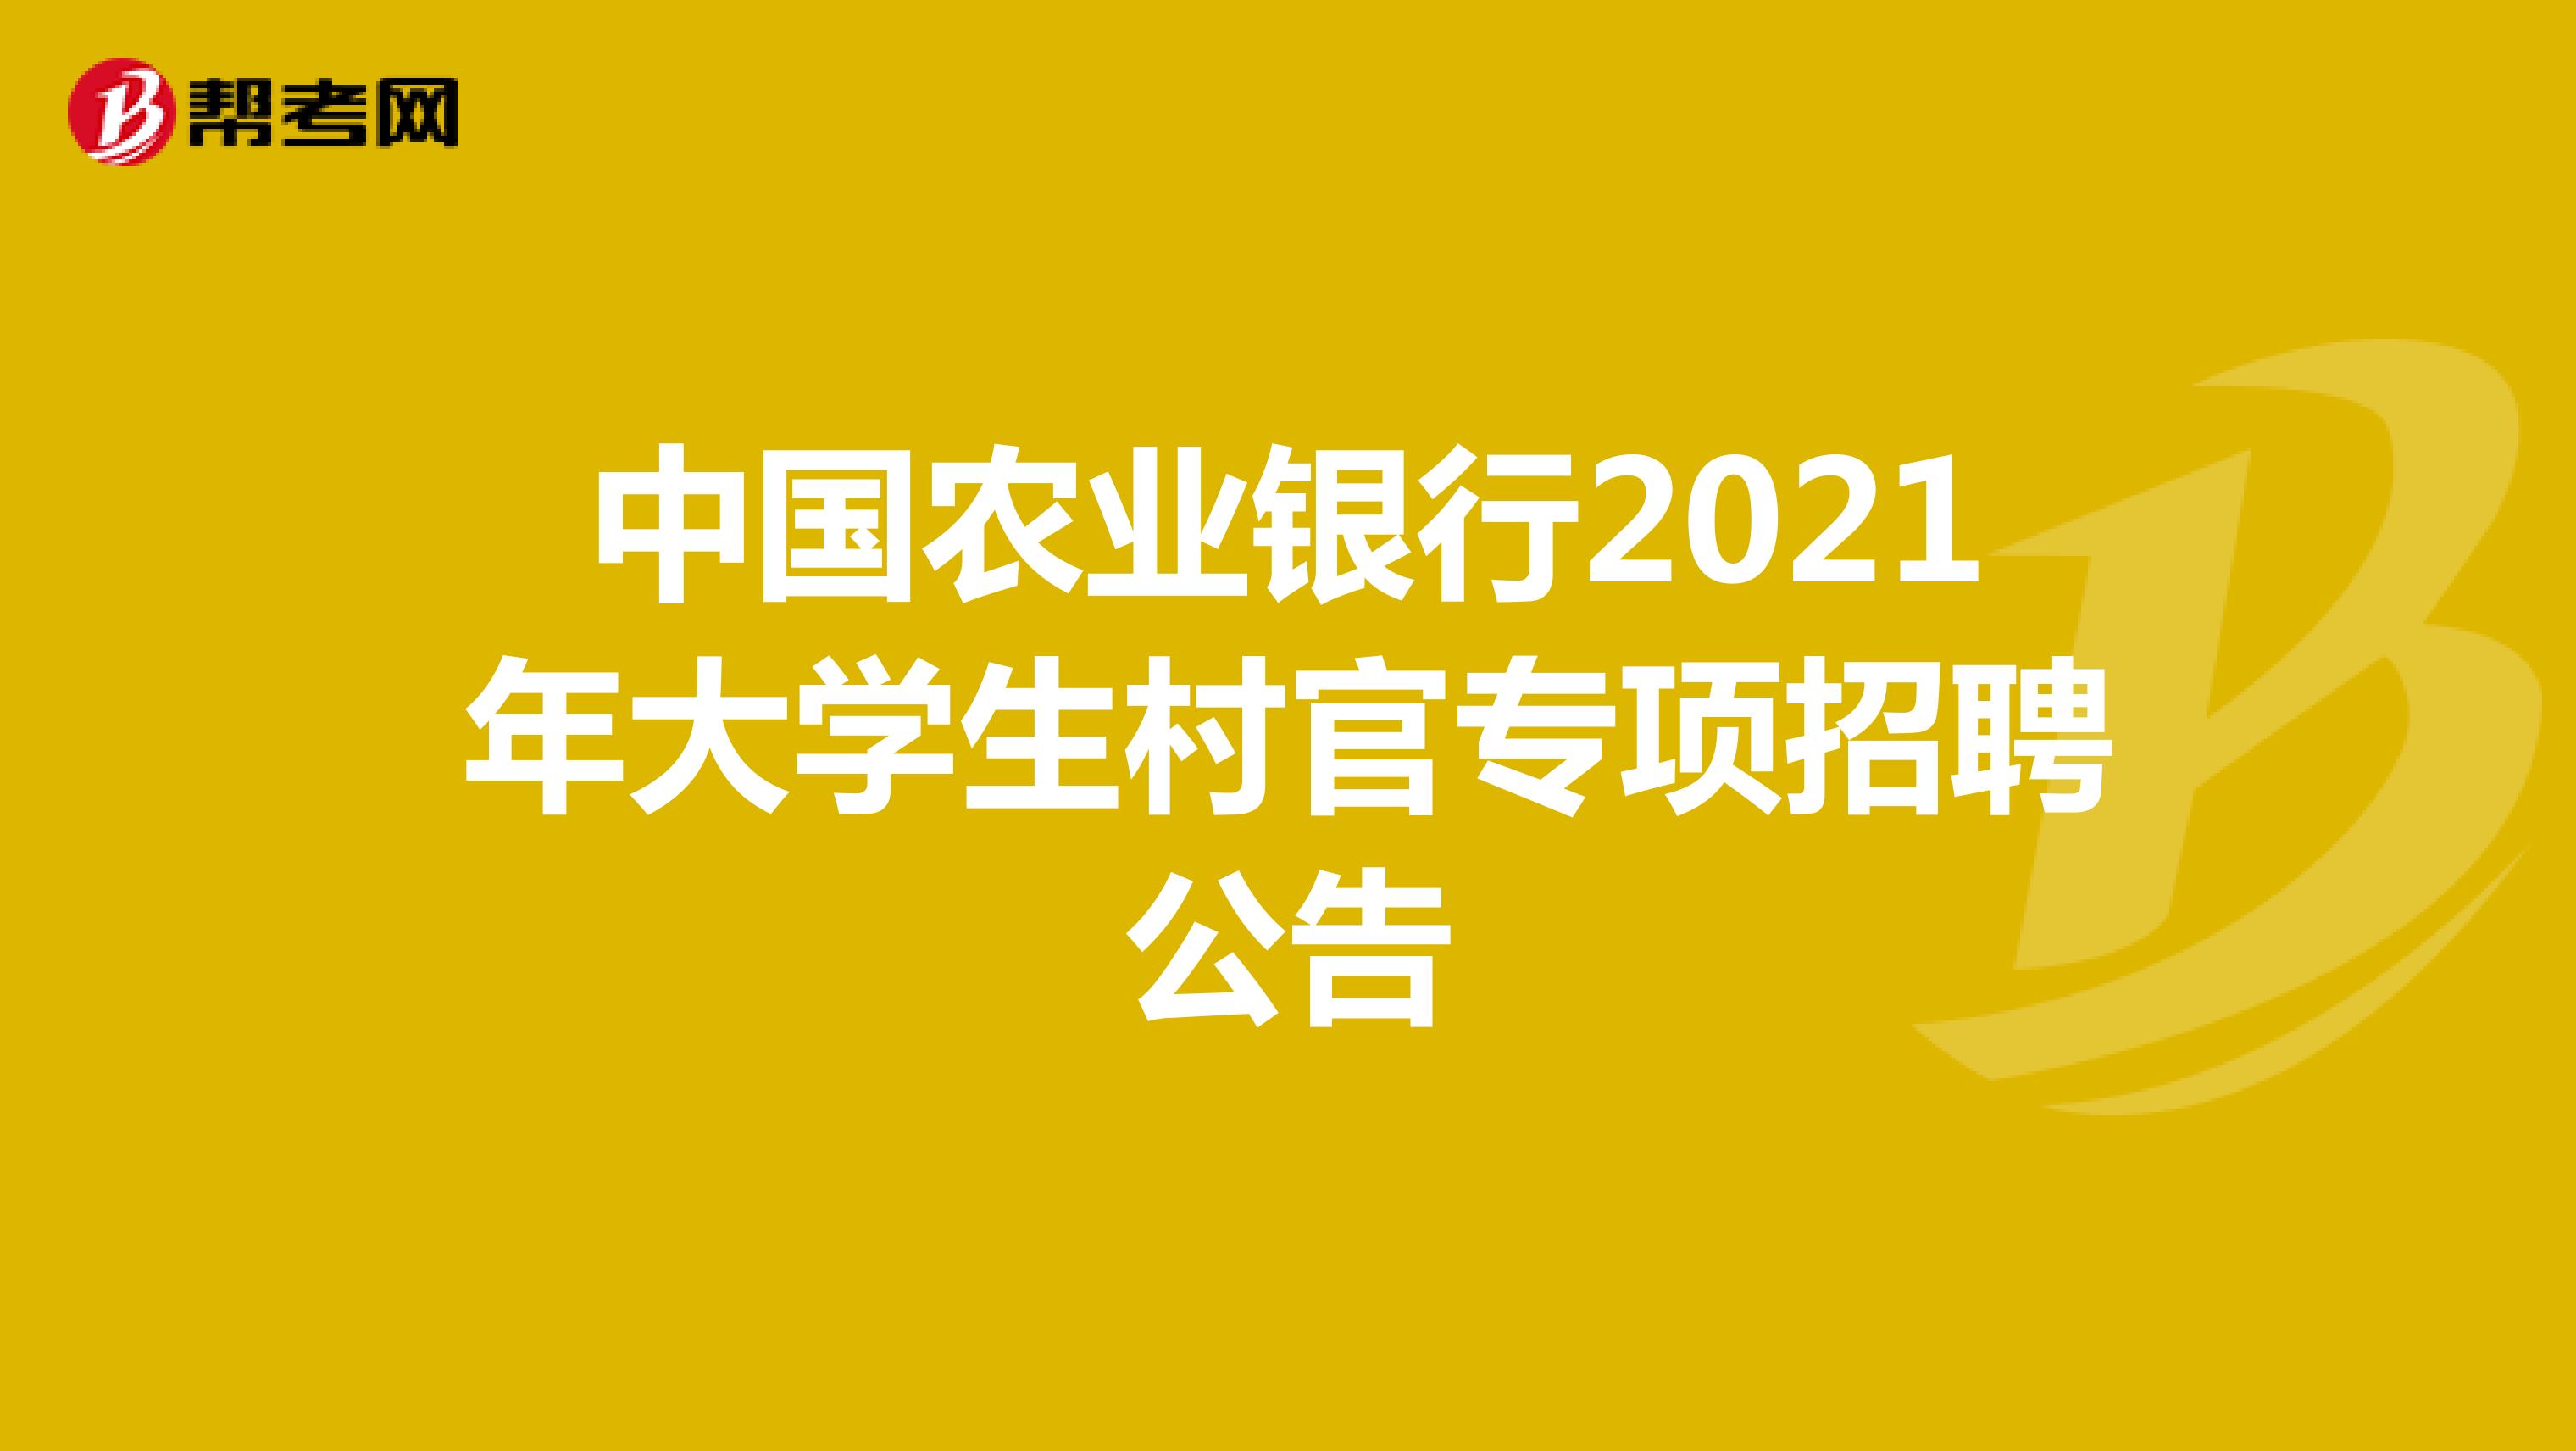 中国农业银行2021年大学生村官专项招聘公告